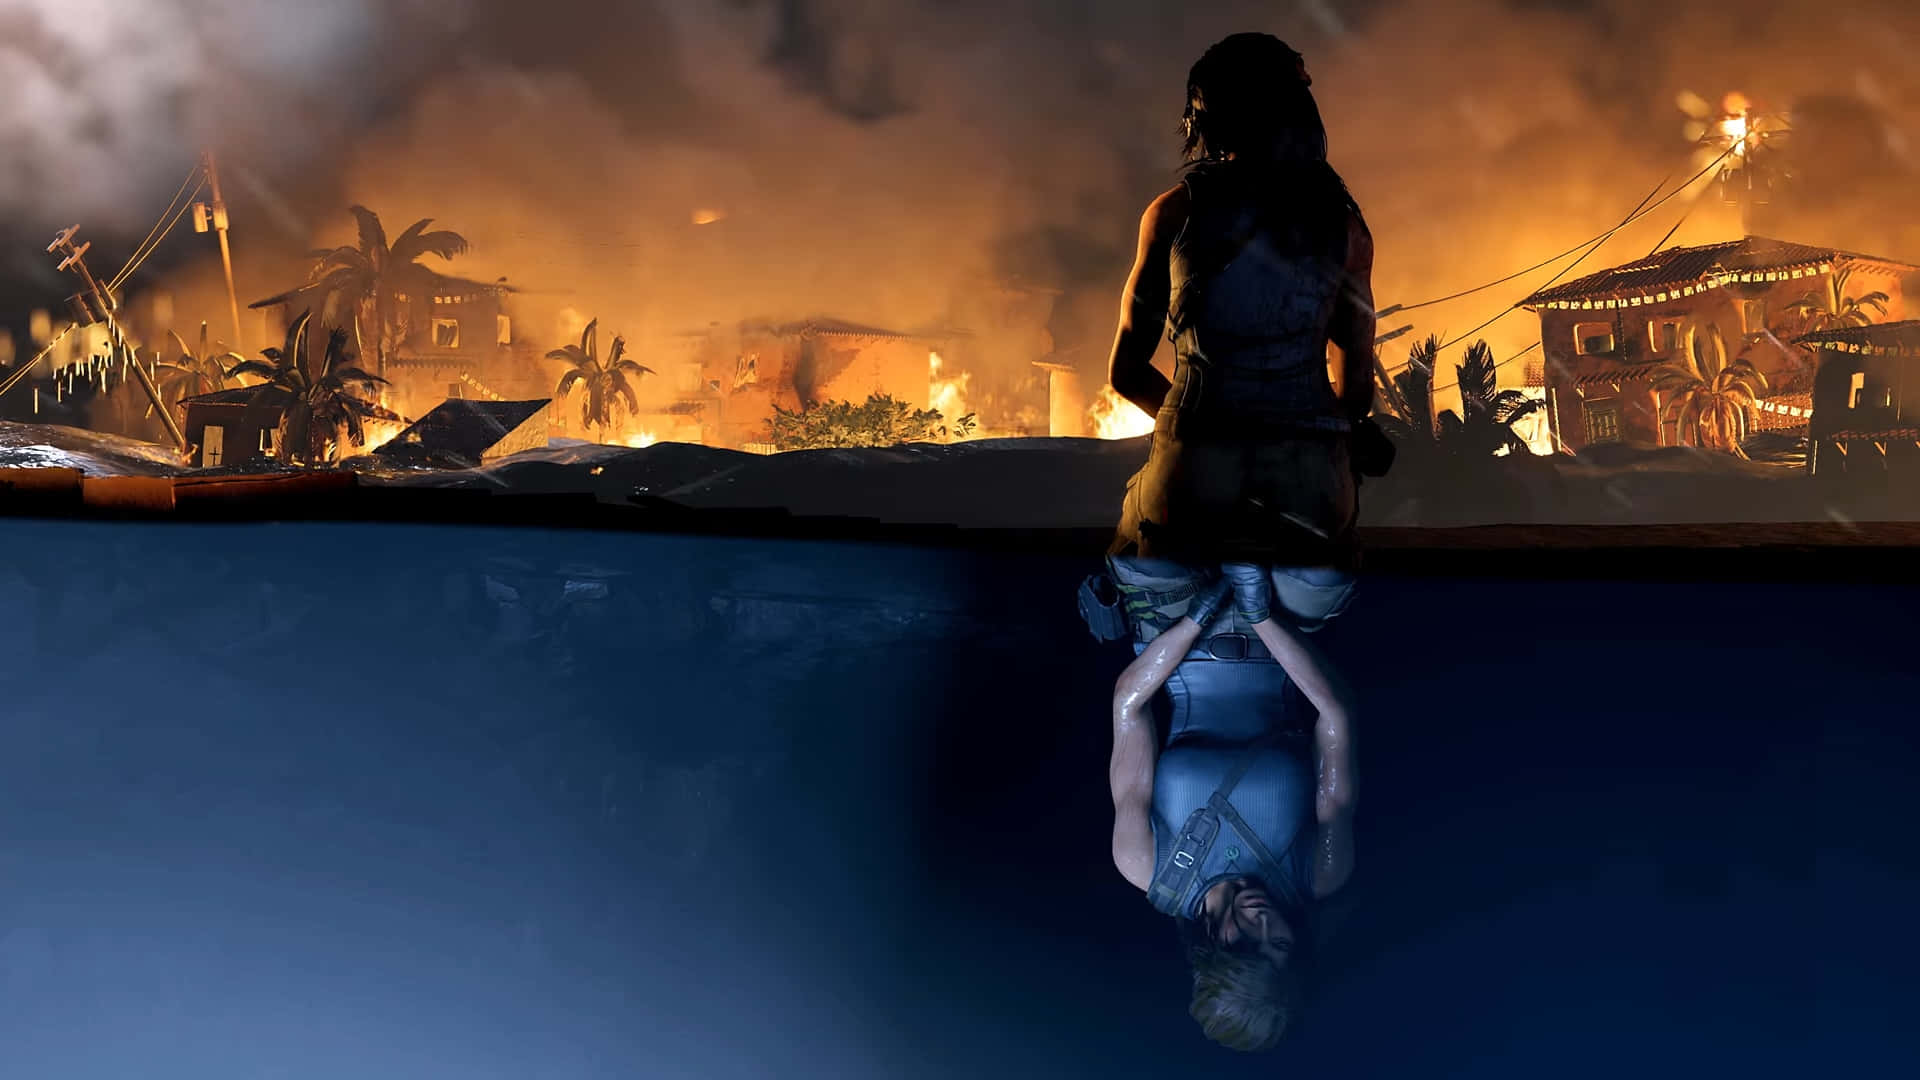 Laracroft Förbereder Sig För Att Utforska Farliga Gravar I Shadow Of The Tomb Raider.